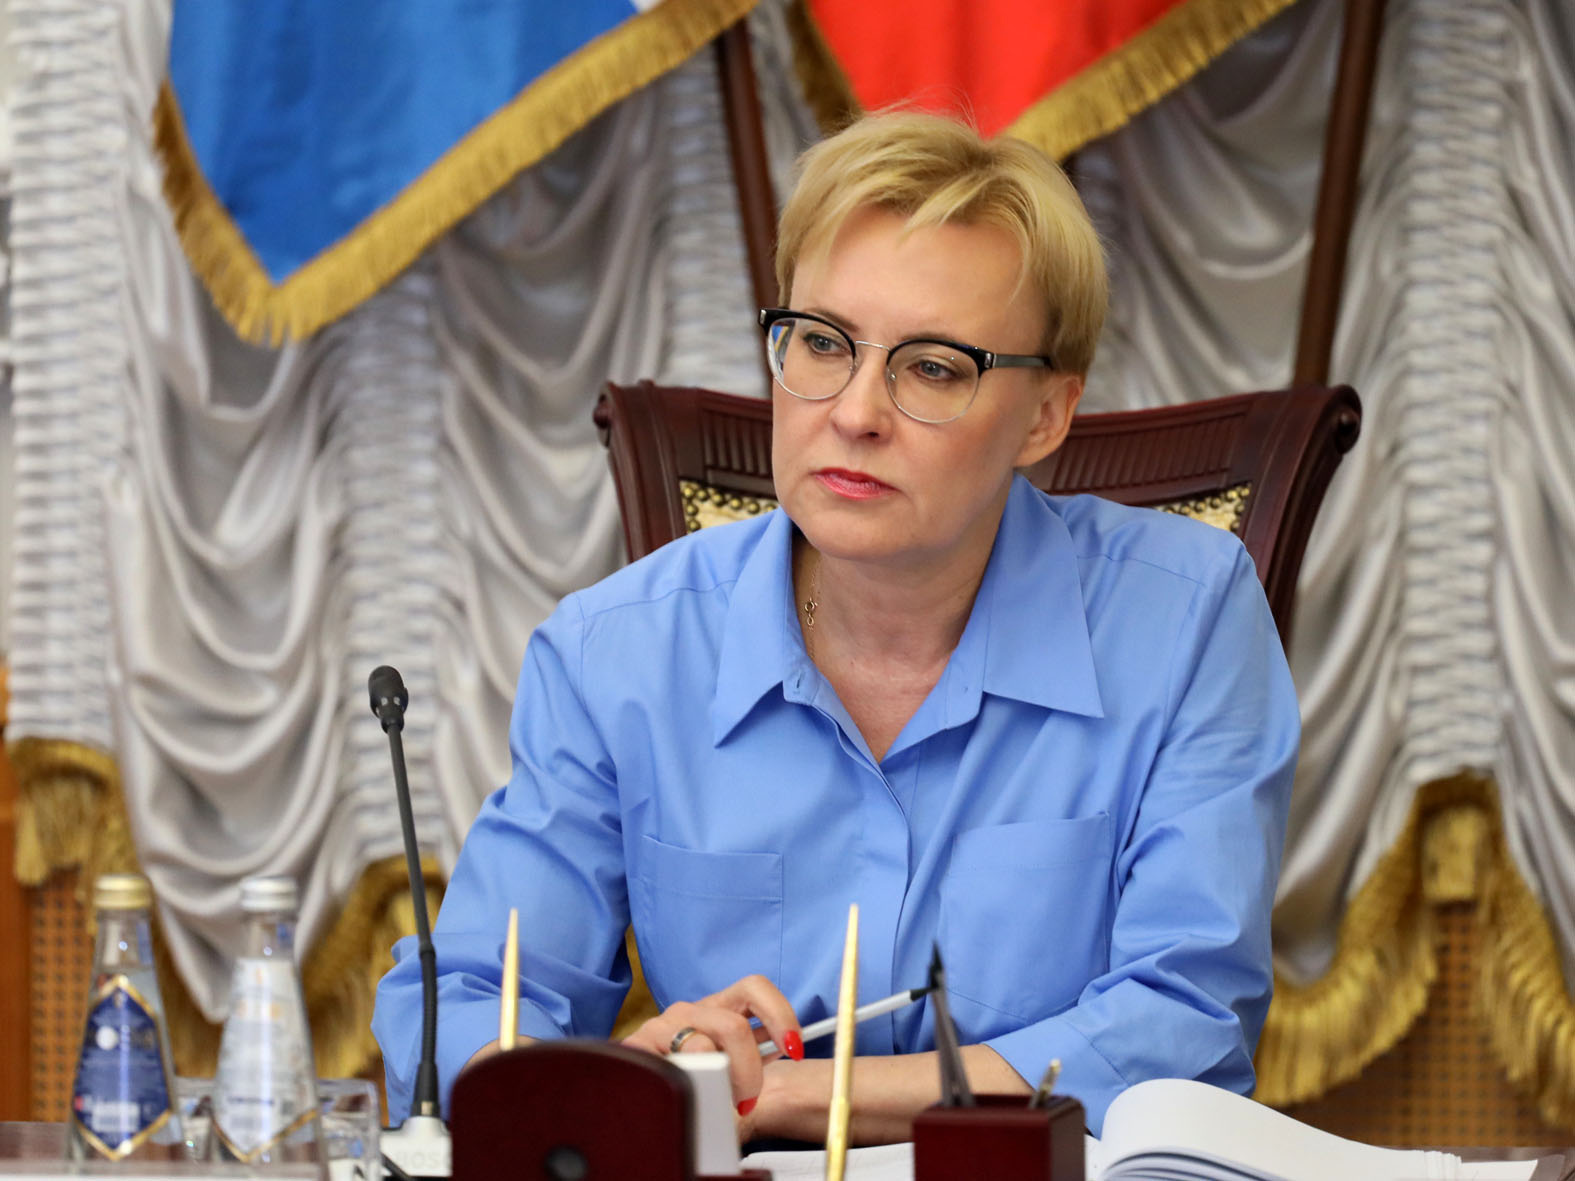 Елена Владимировна Лапушкина возглавляет администрацию Самары с 2017 года